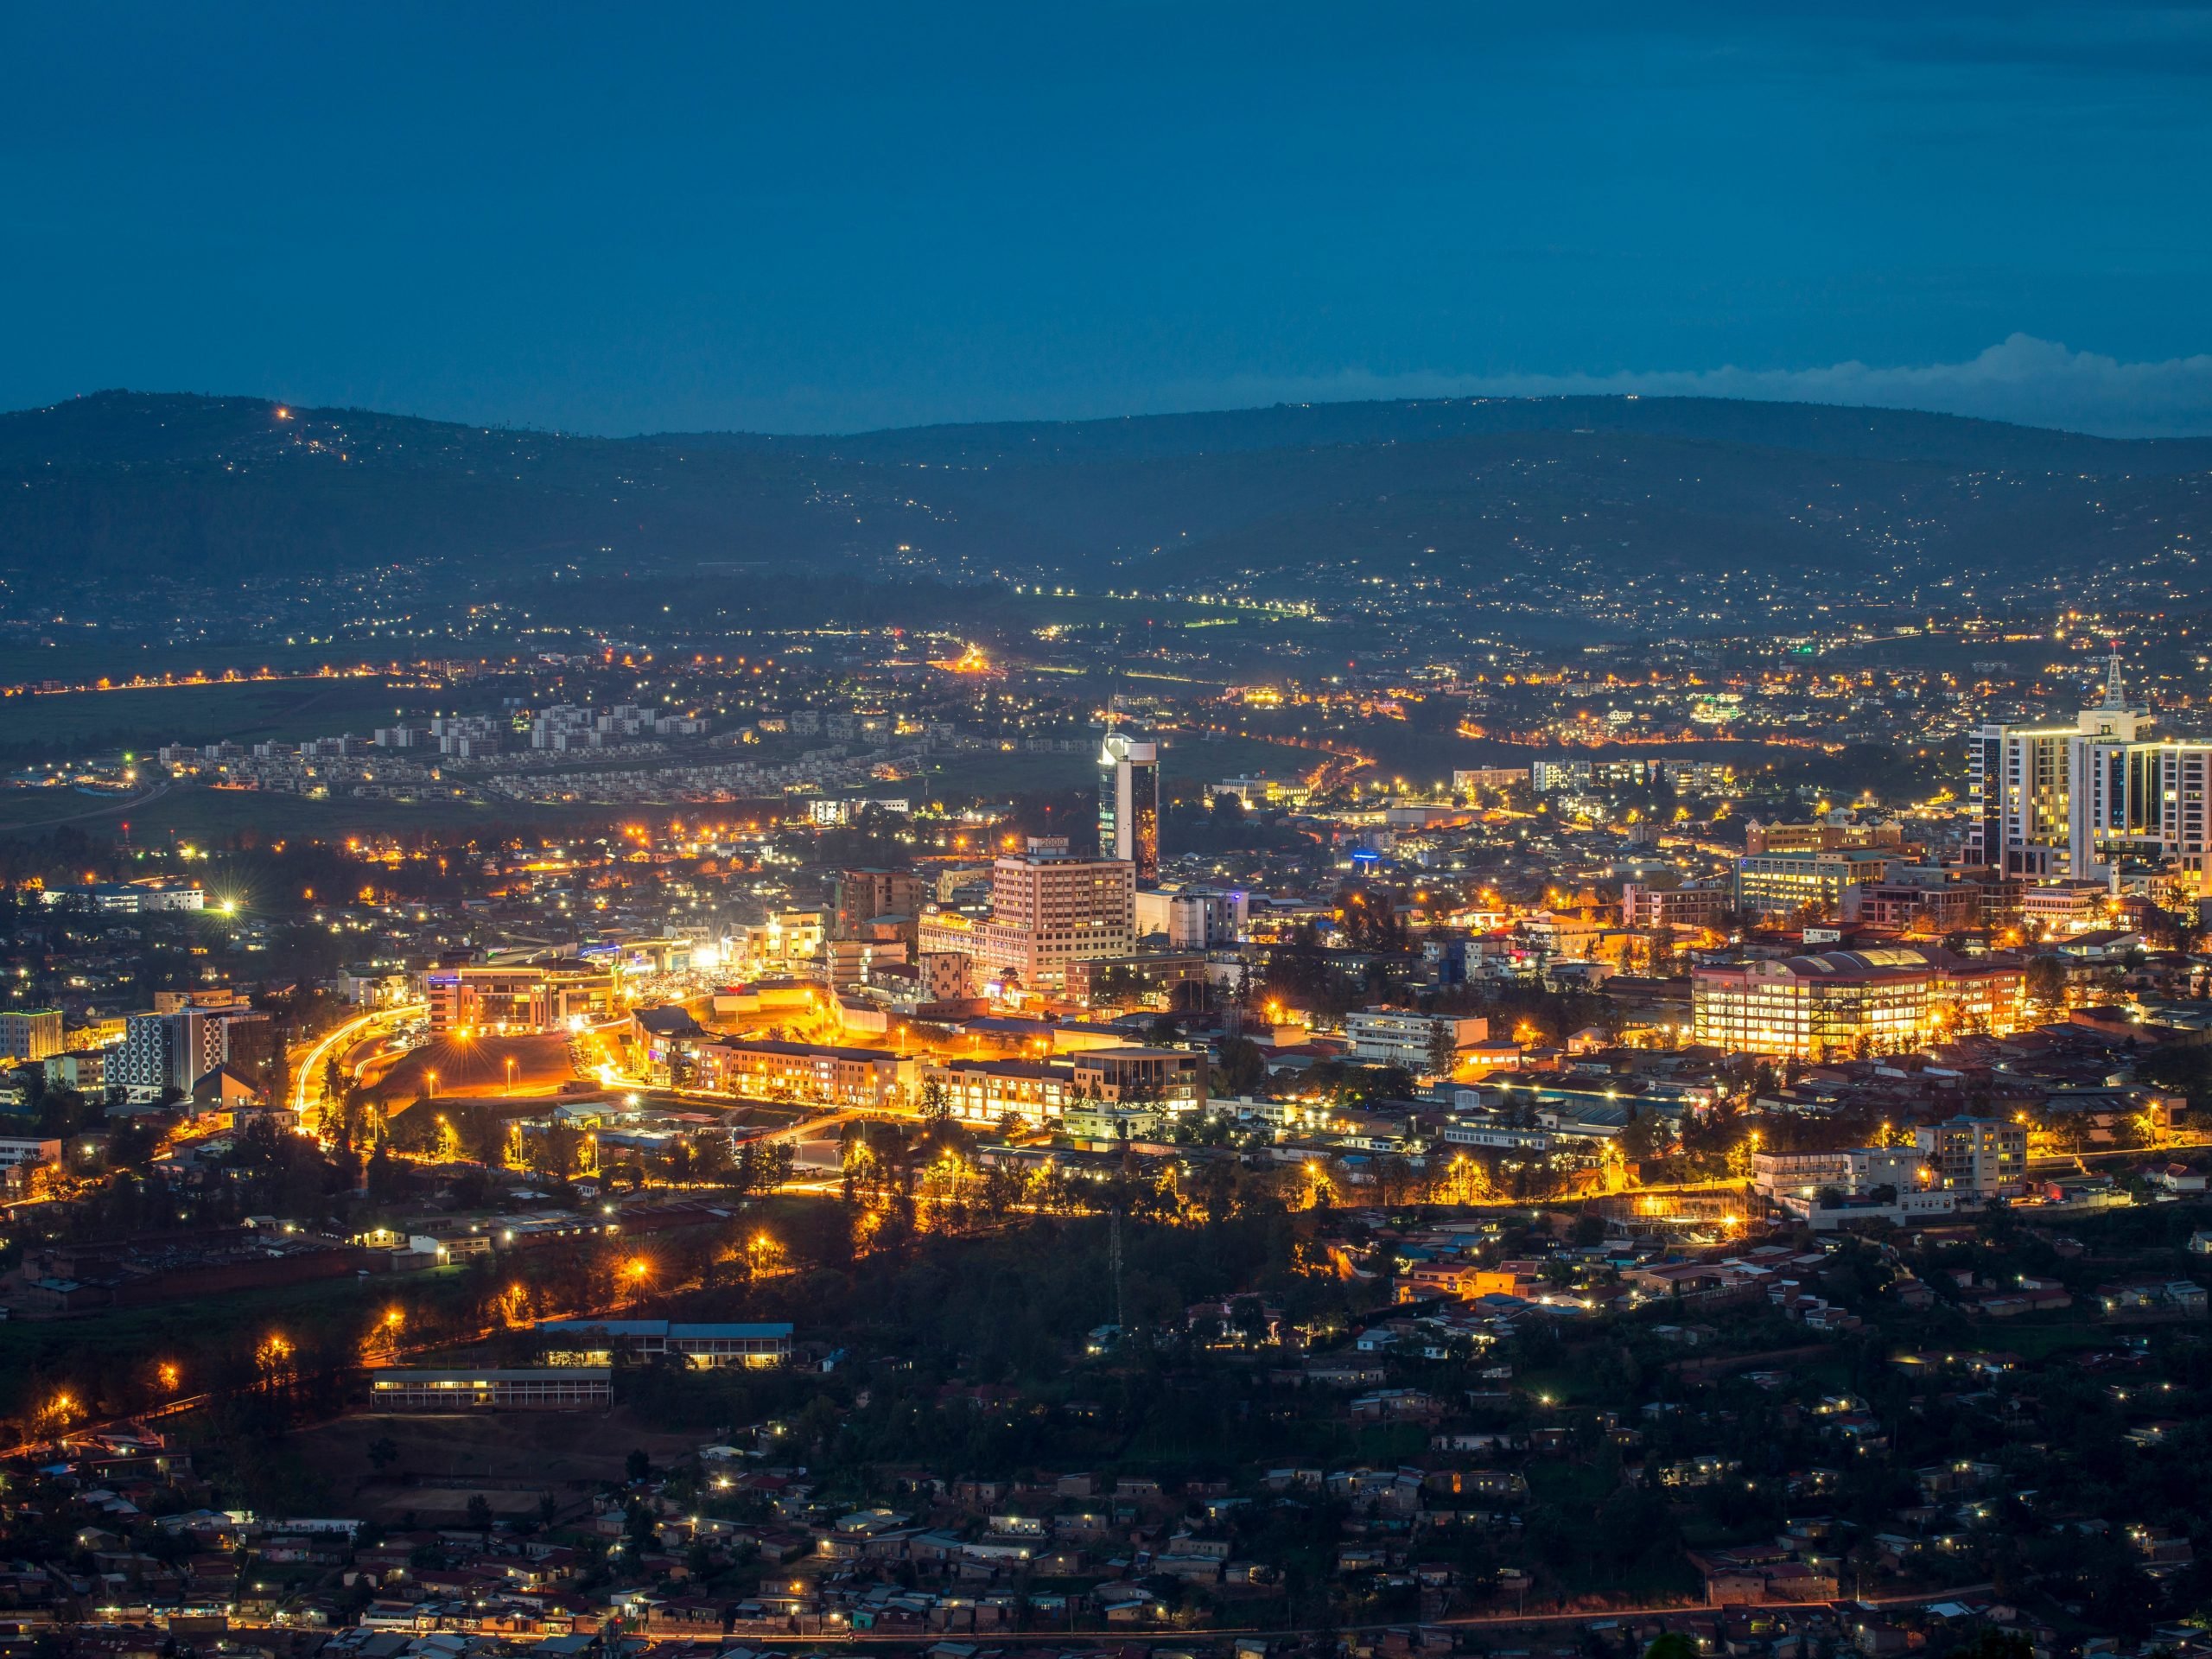 Kigali city view from Nyarugenge